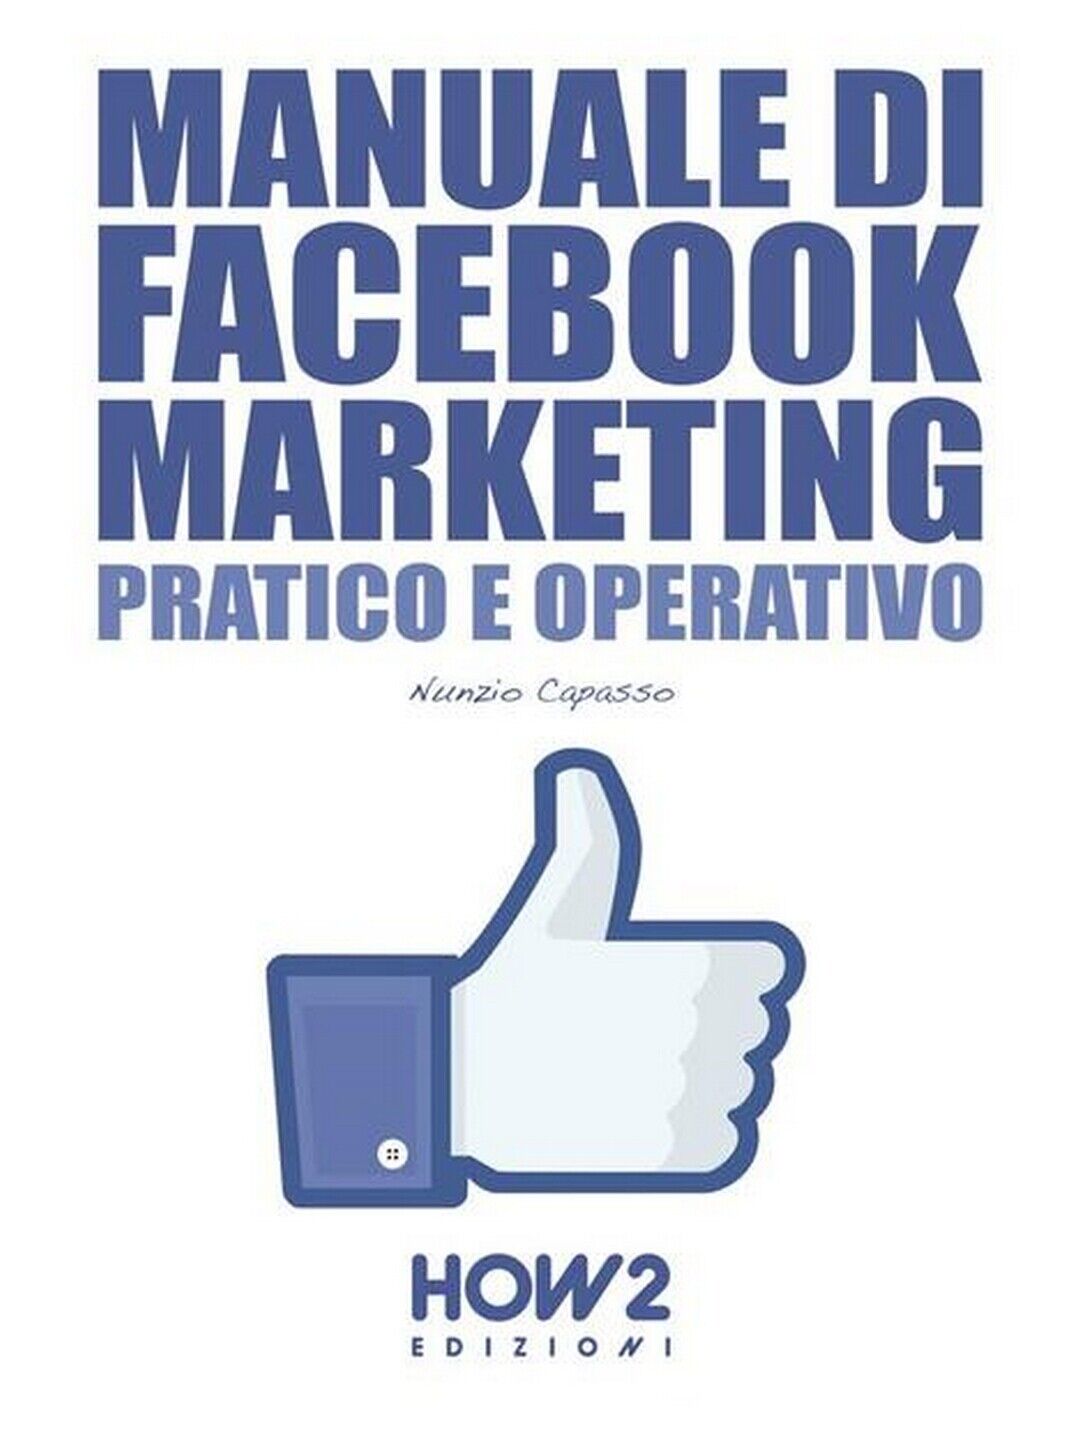 Manuale di Facebool marketing. Pratico e operativo  di Nunzio Capasso,  2016 libro usato